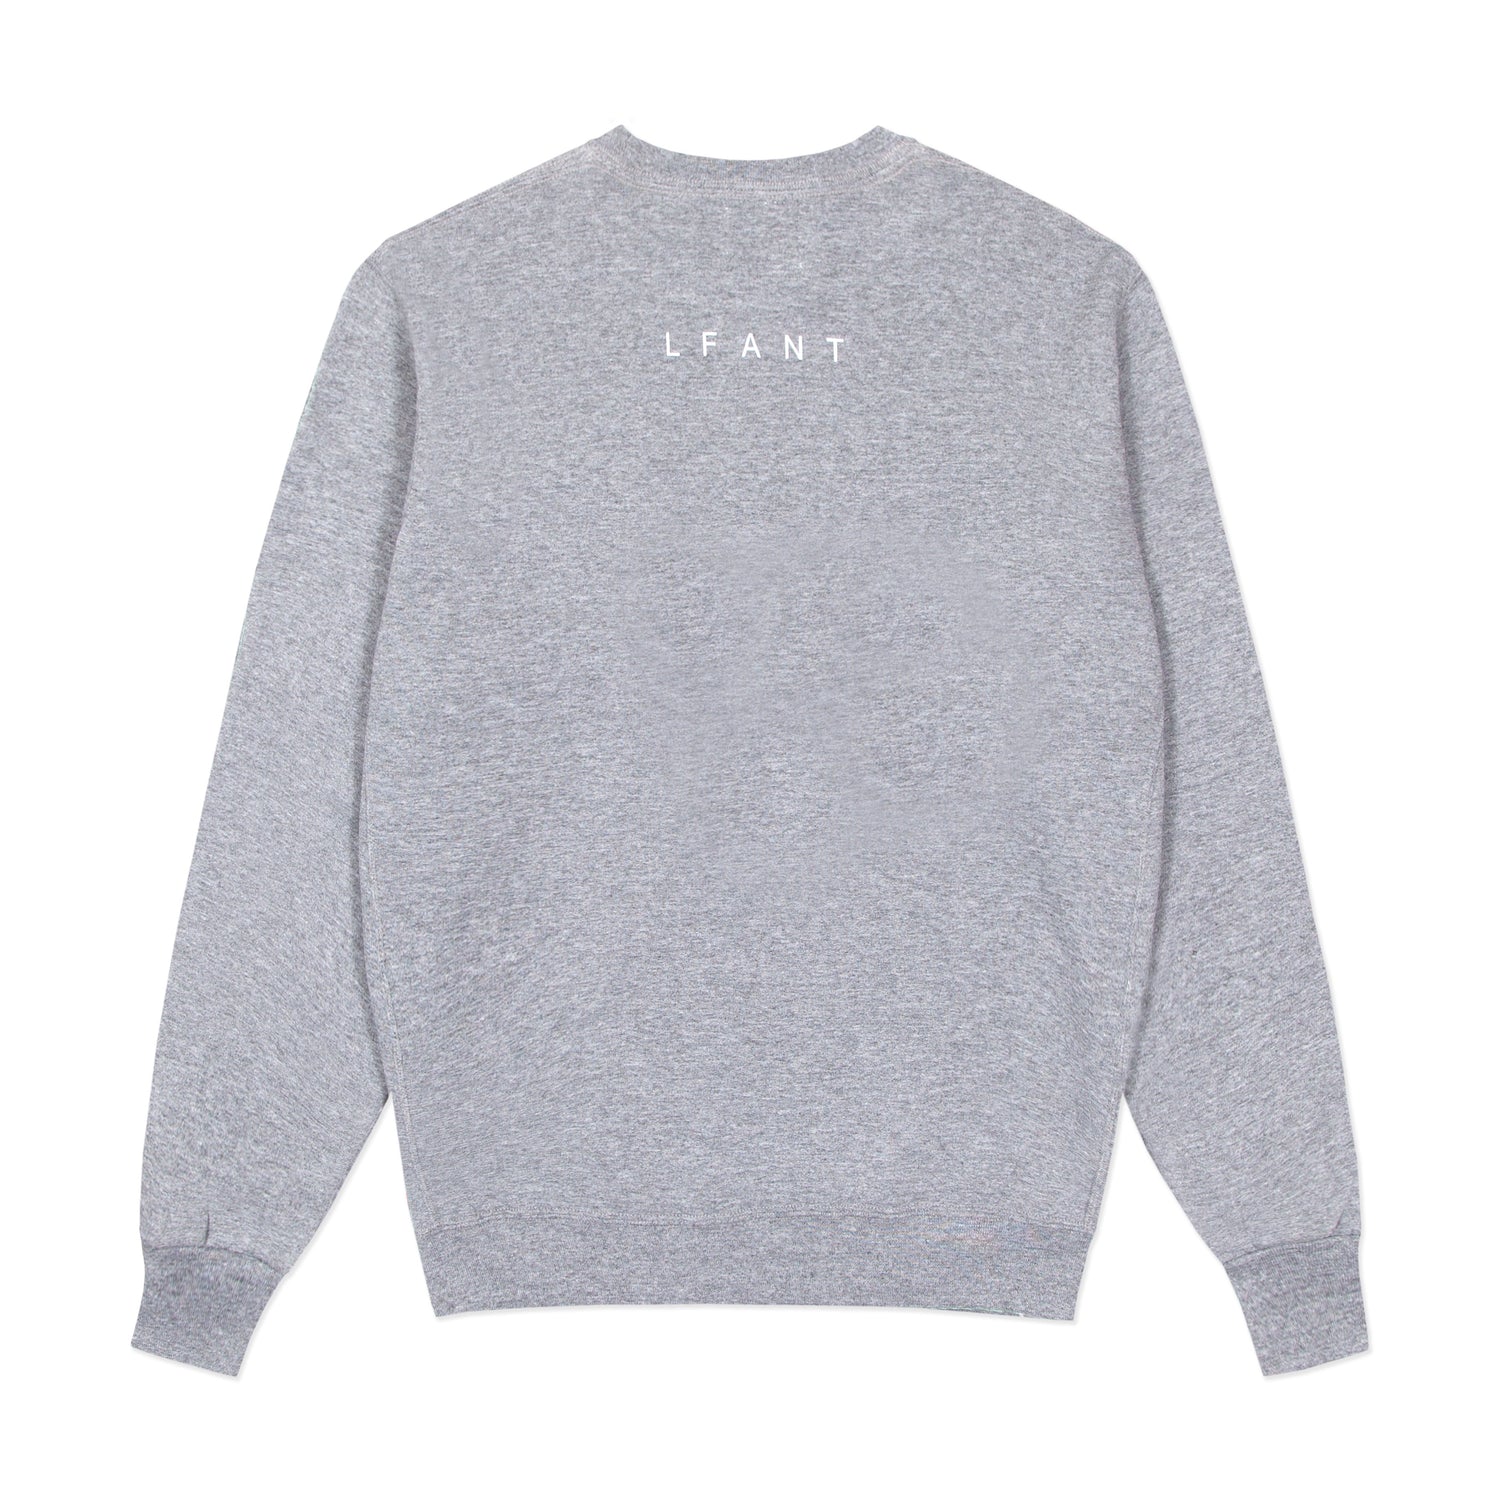 Grey crewneck sweatshirt with "LFANT" printed across the back.